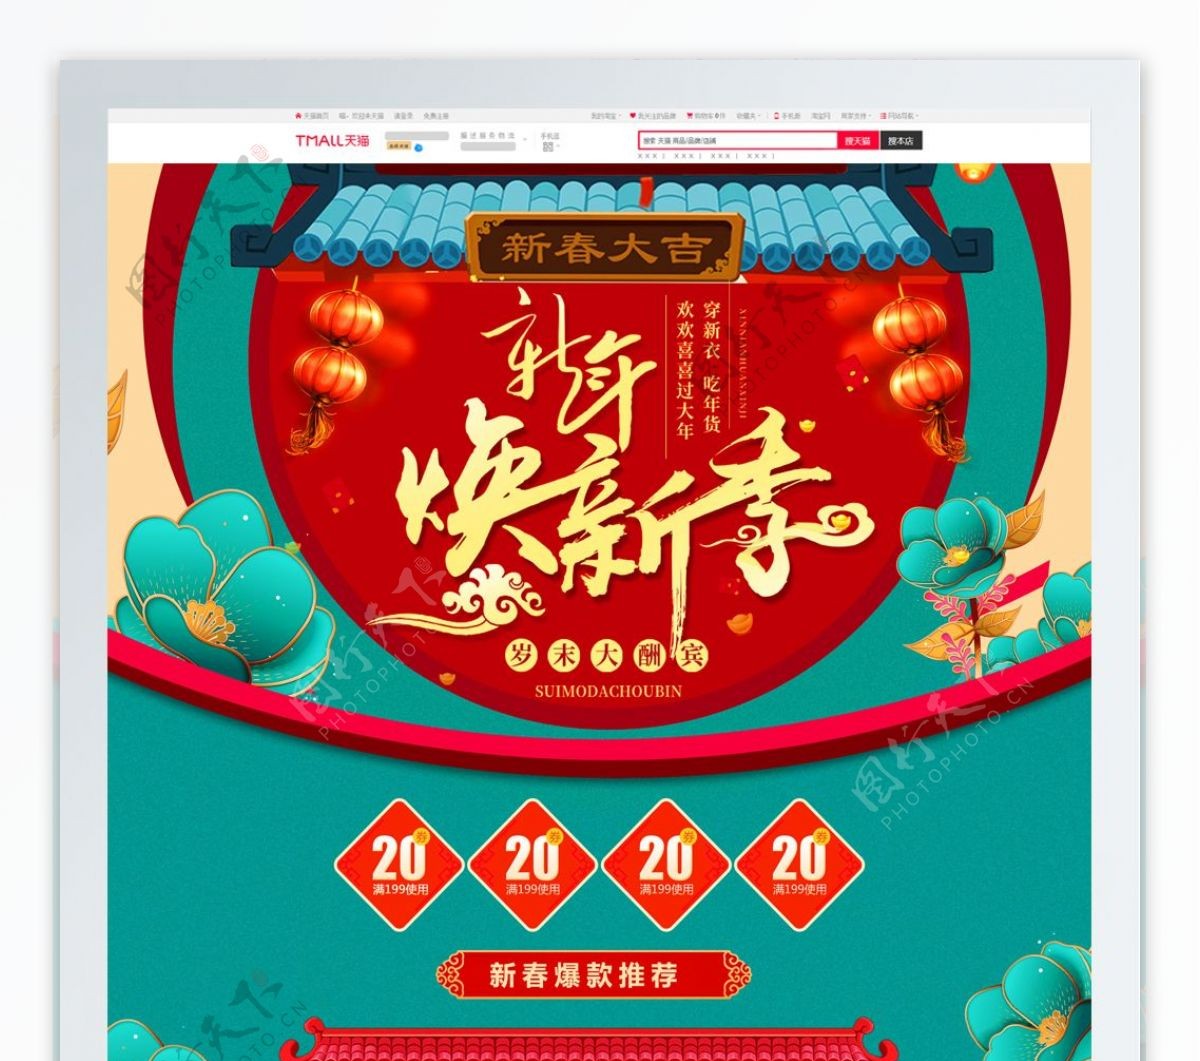 中国风通过主题新春换新厨房电器首页模板